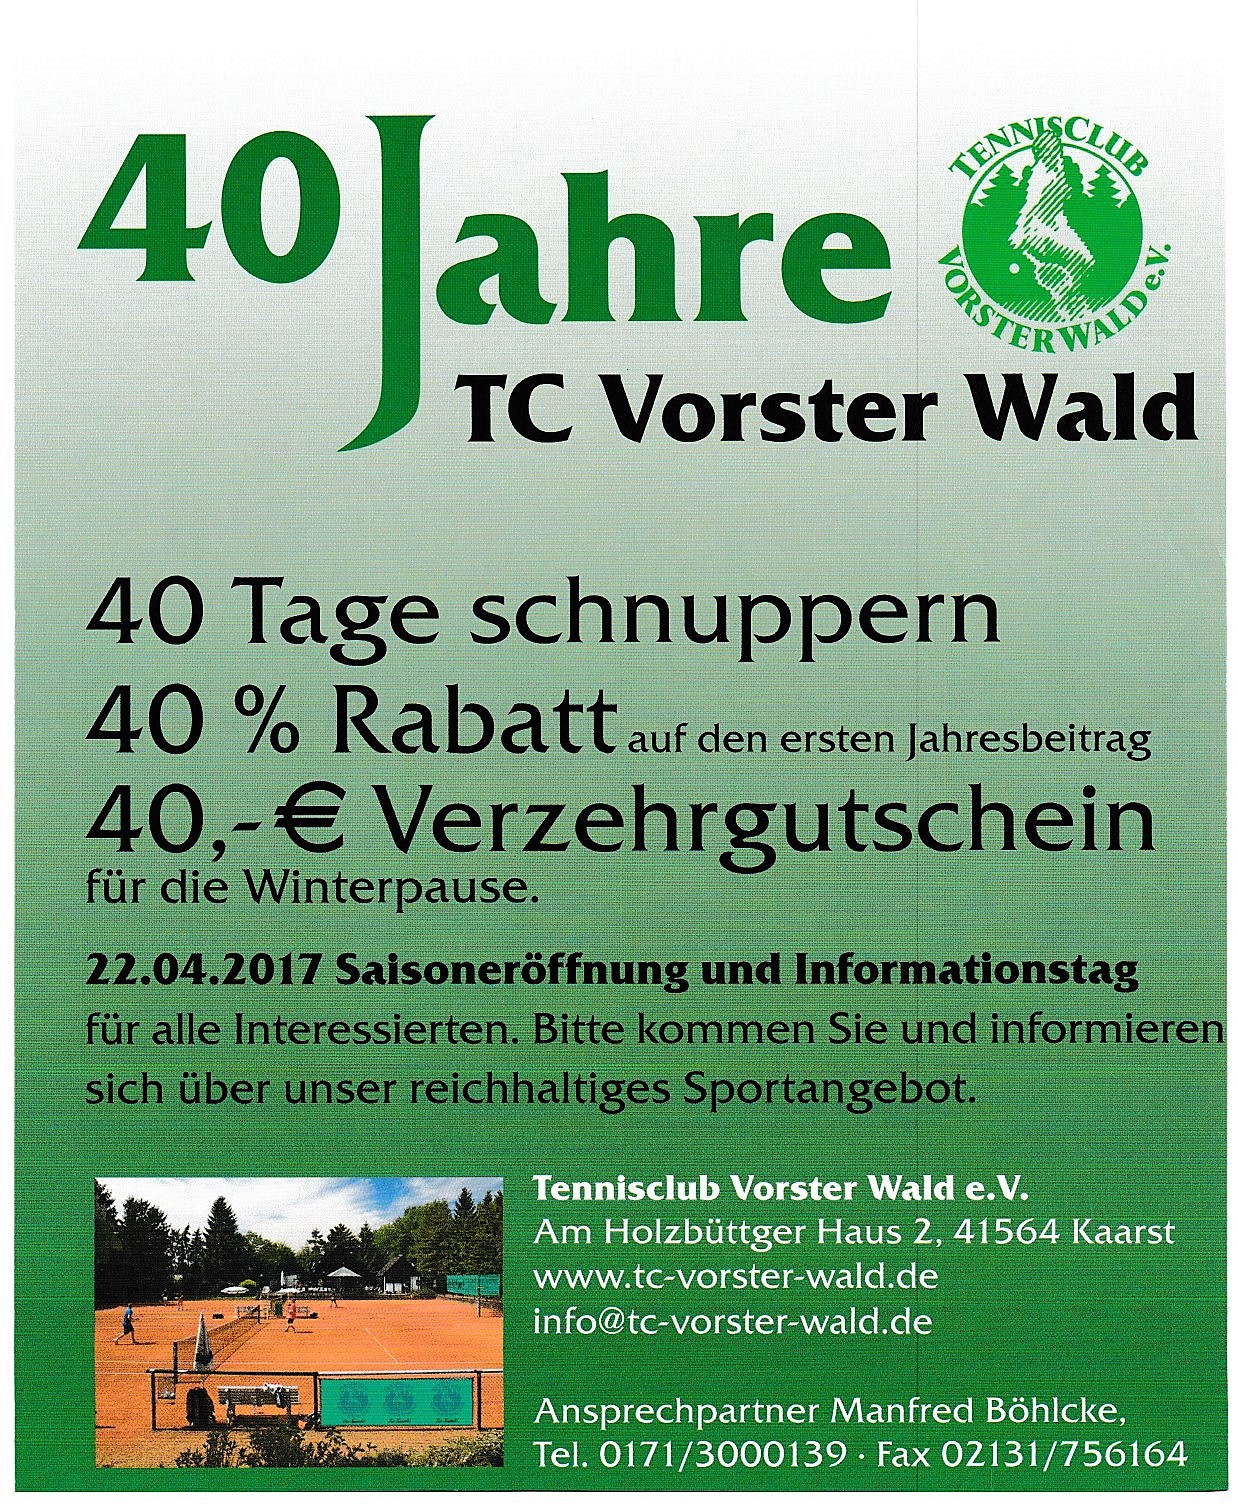 40 Jahre TC Vorster Wald